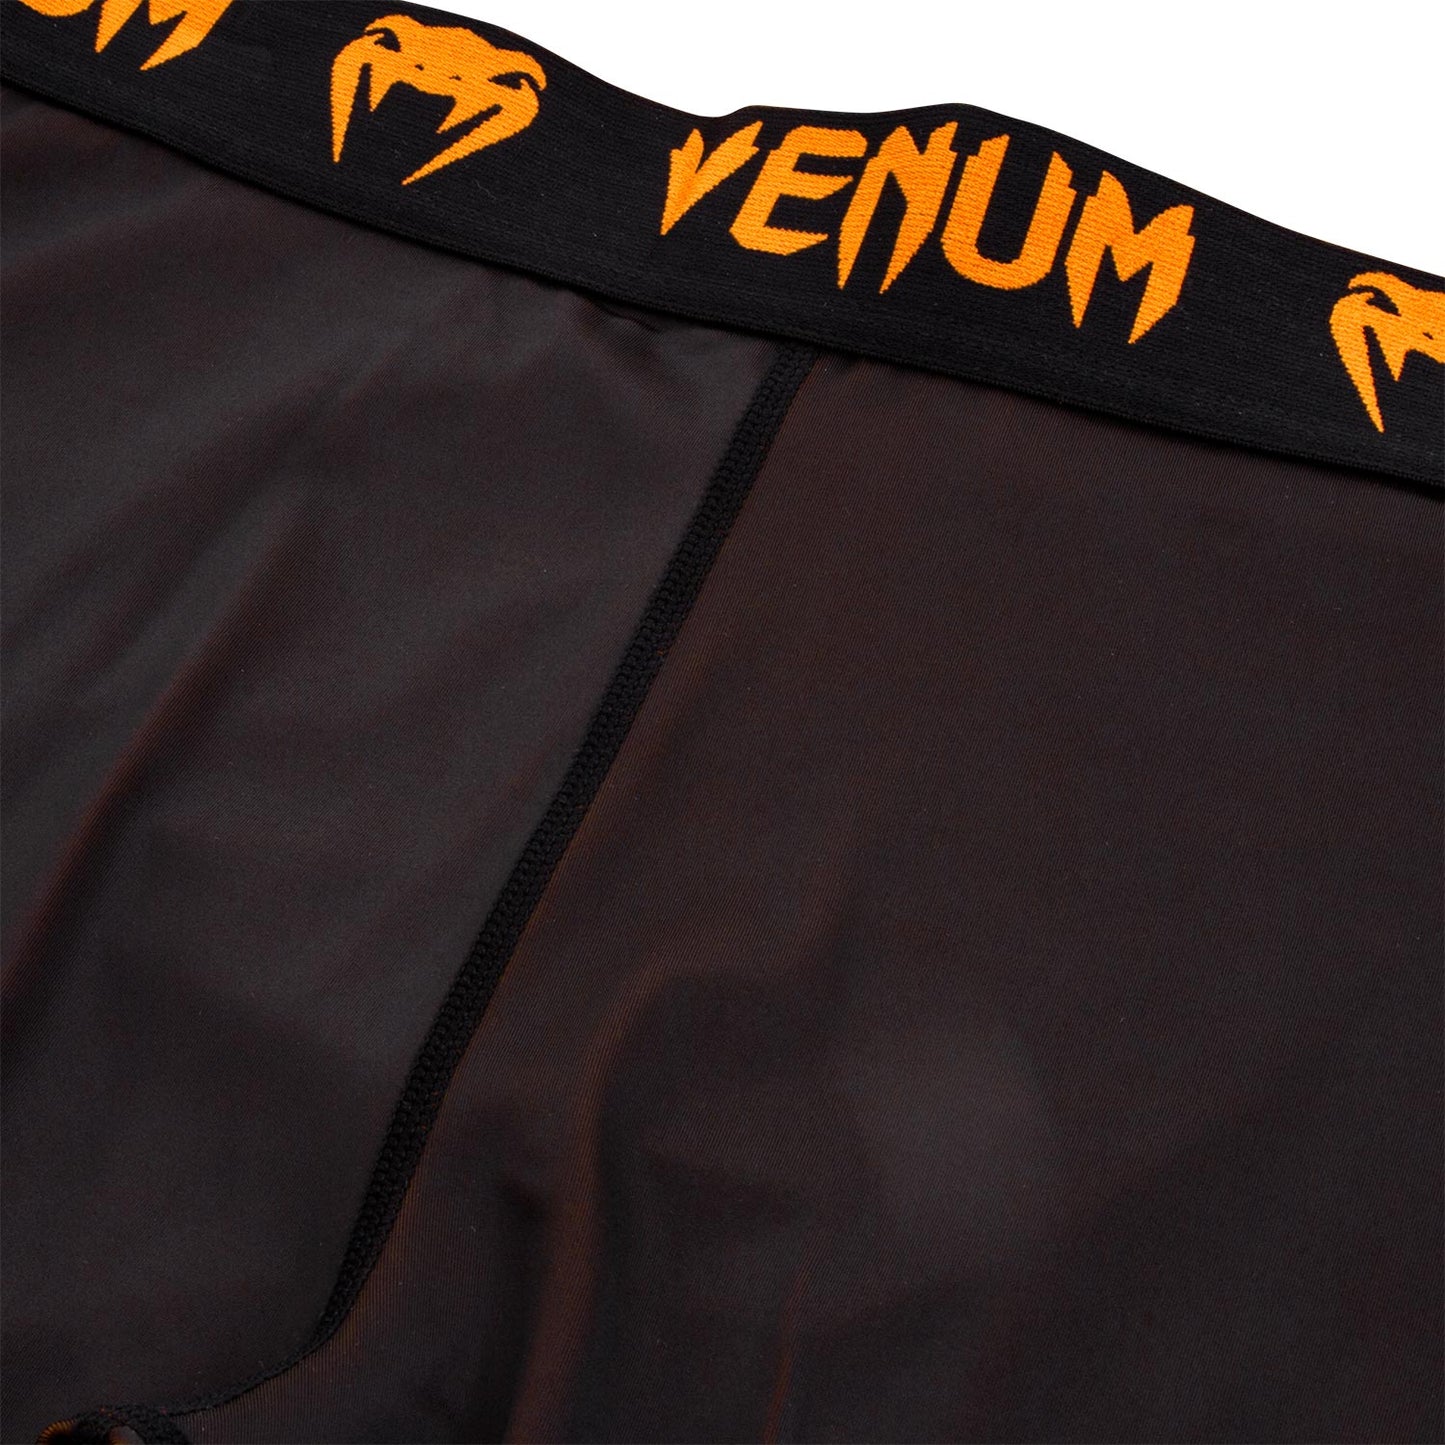 Venum Giant Compression Tights - Black/Neo Orange